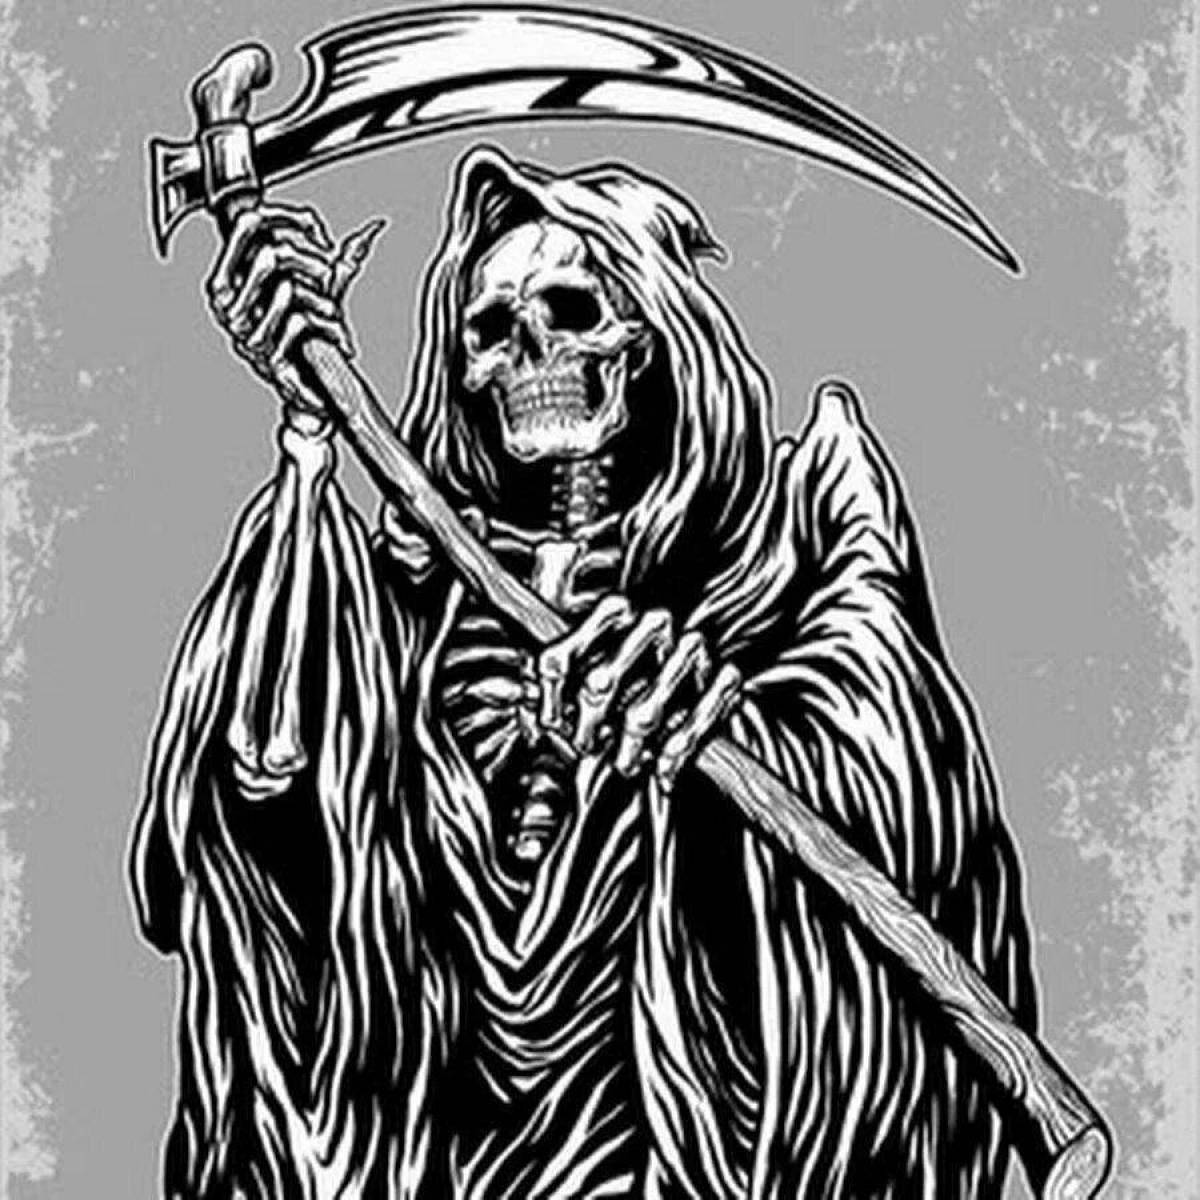 Grim reaper horror coloring book